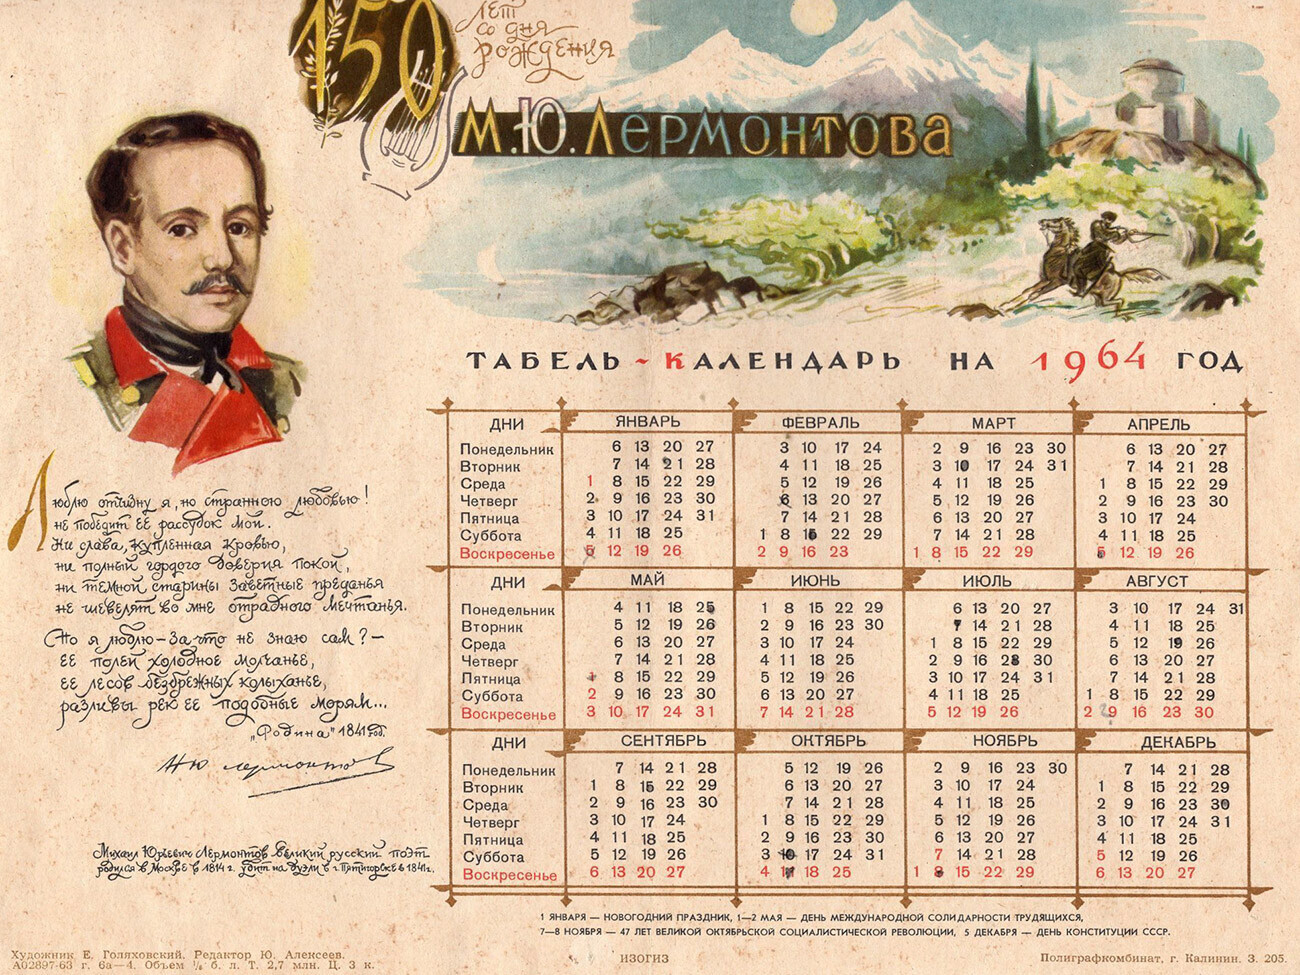 Sovjetski koledar iz leta 1964 (posvečen 150-letnici pesnika Mihaila Lermontova) s sedemdnevnim tednom, ki se je začel s ponedeljkom.
